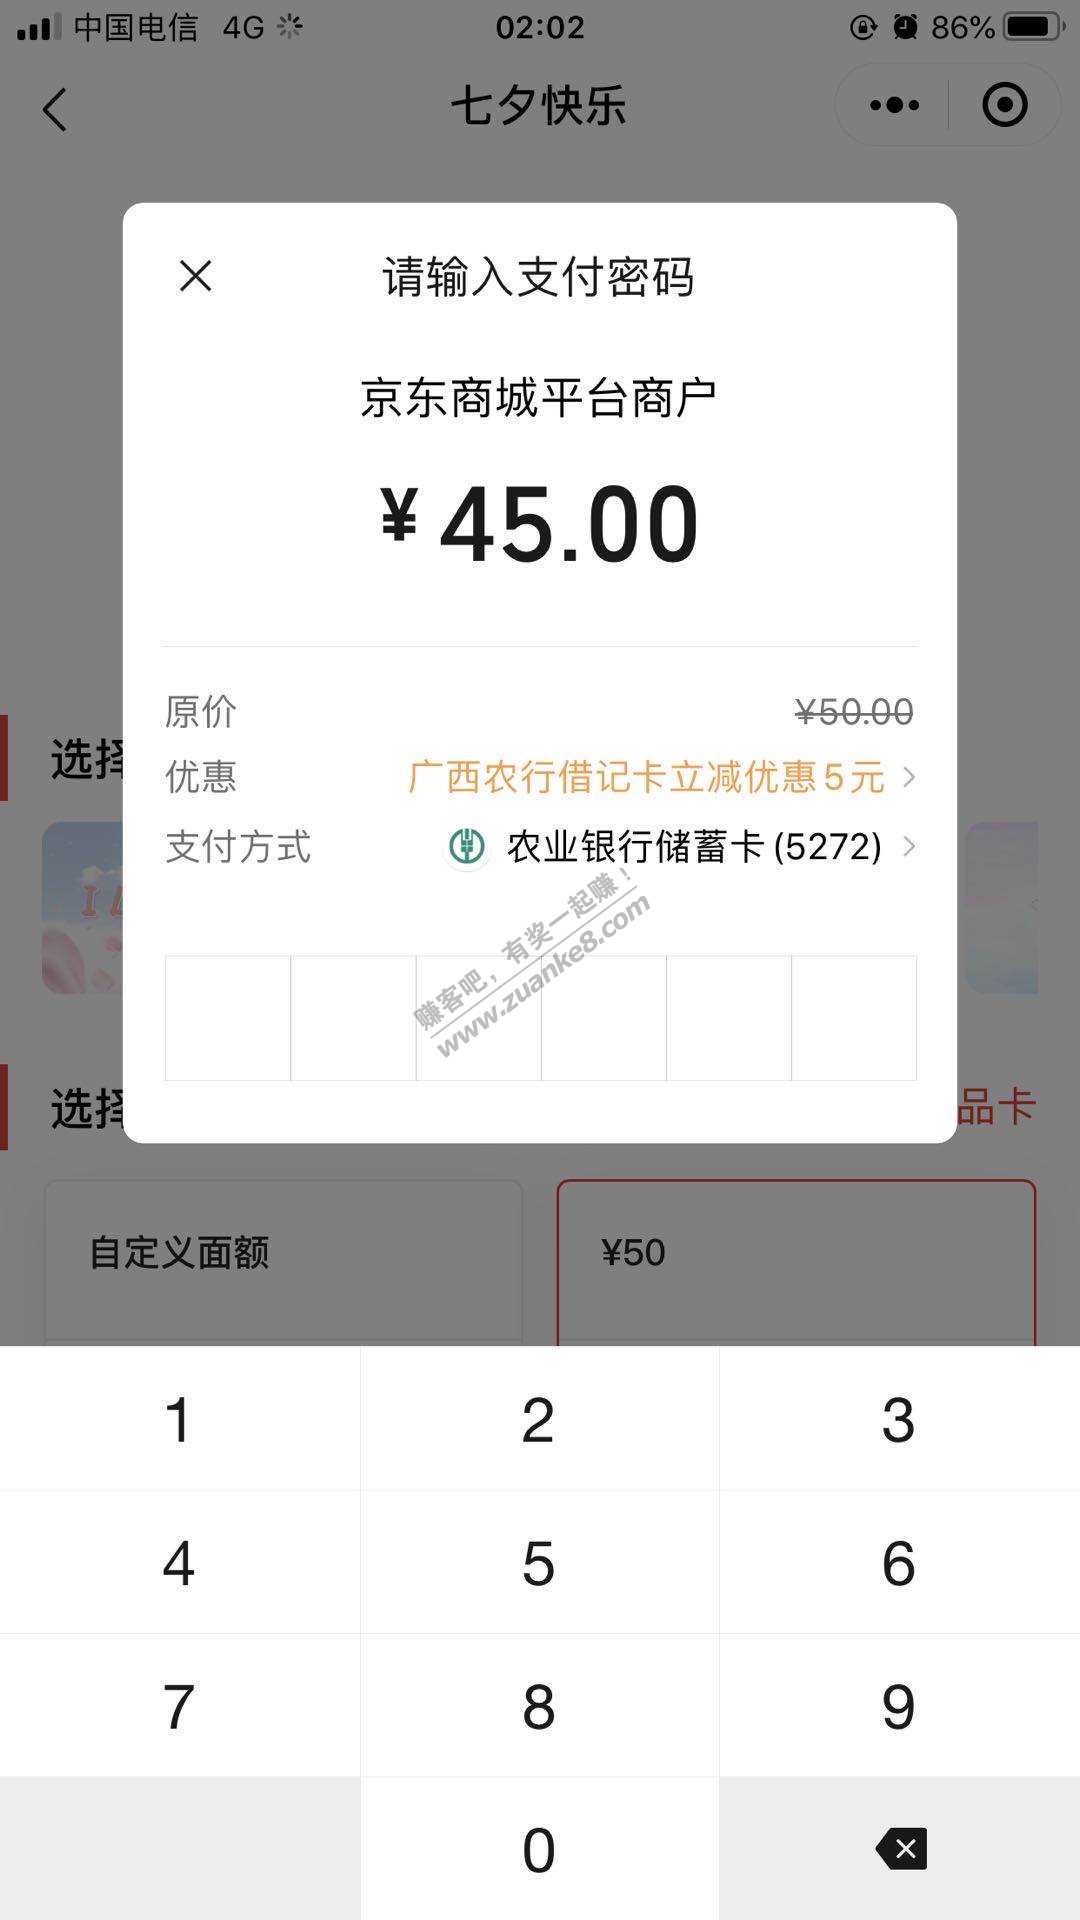 广西农业买京东卡50-5-惠小助(52huixz.com)